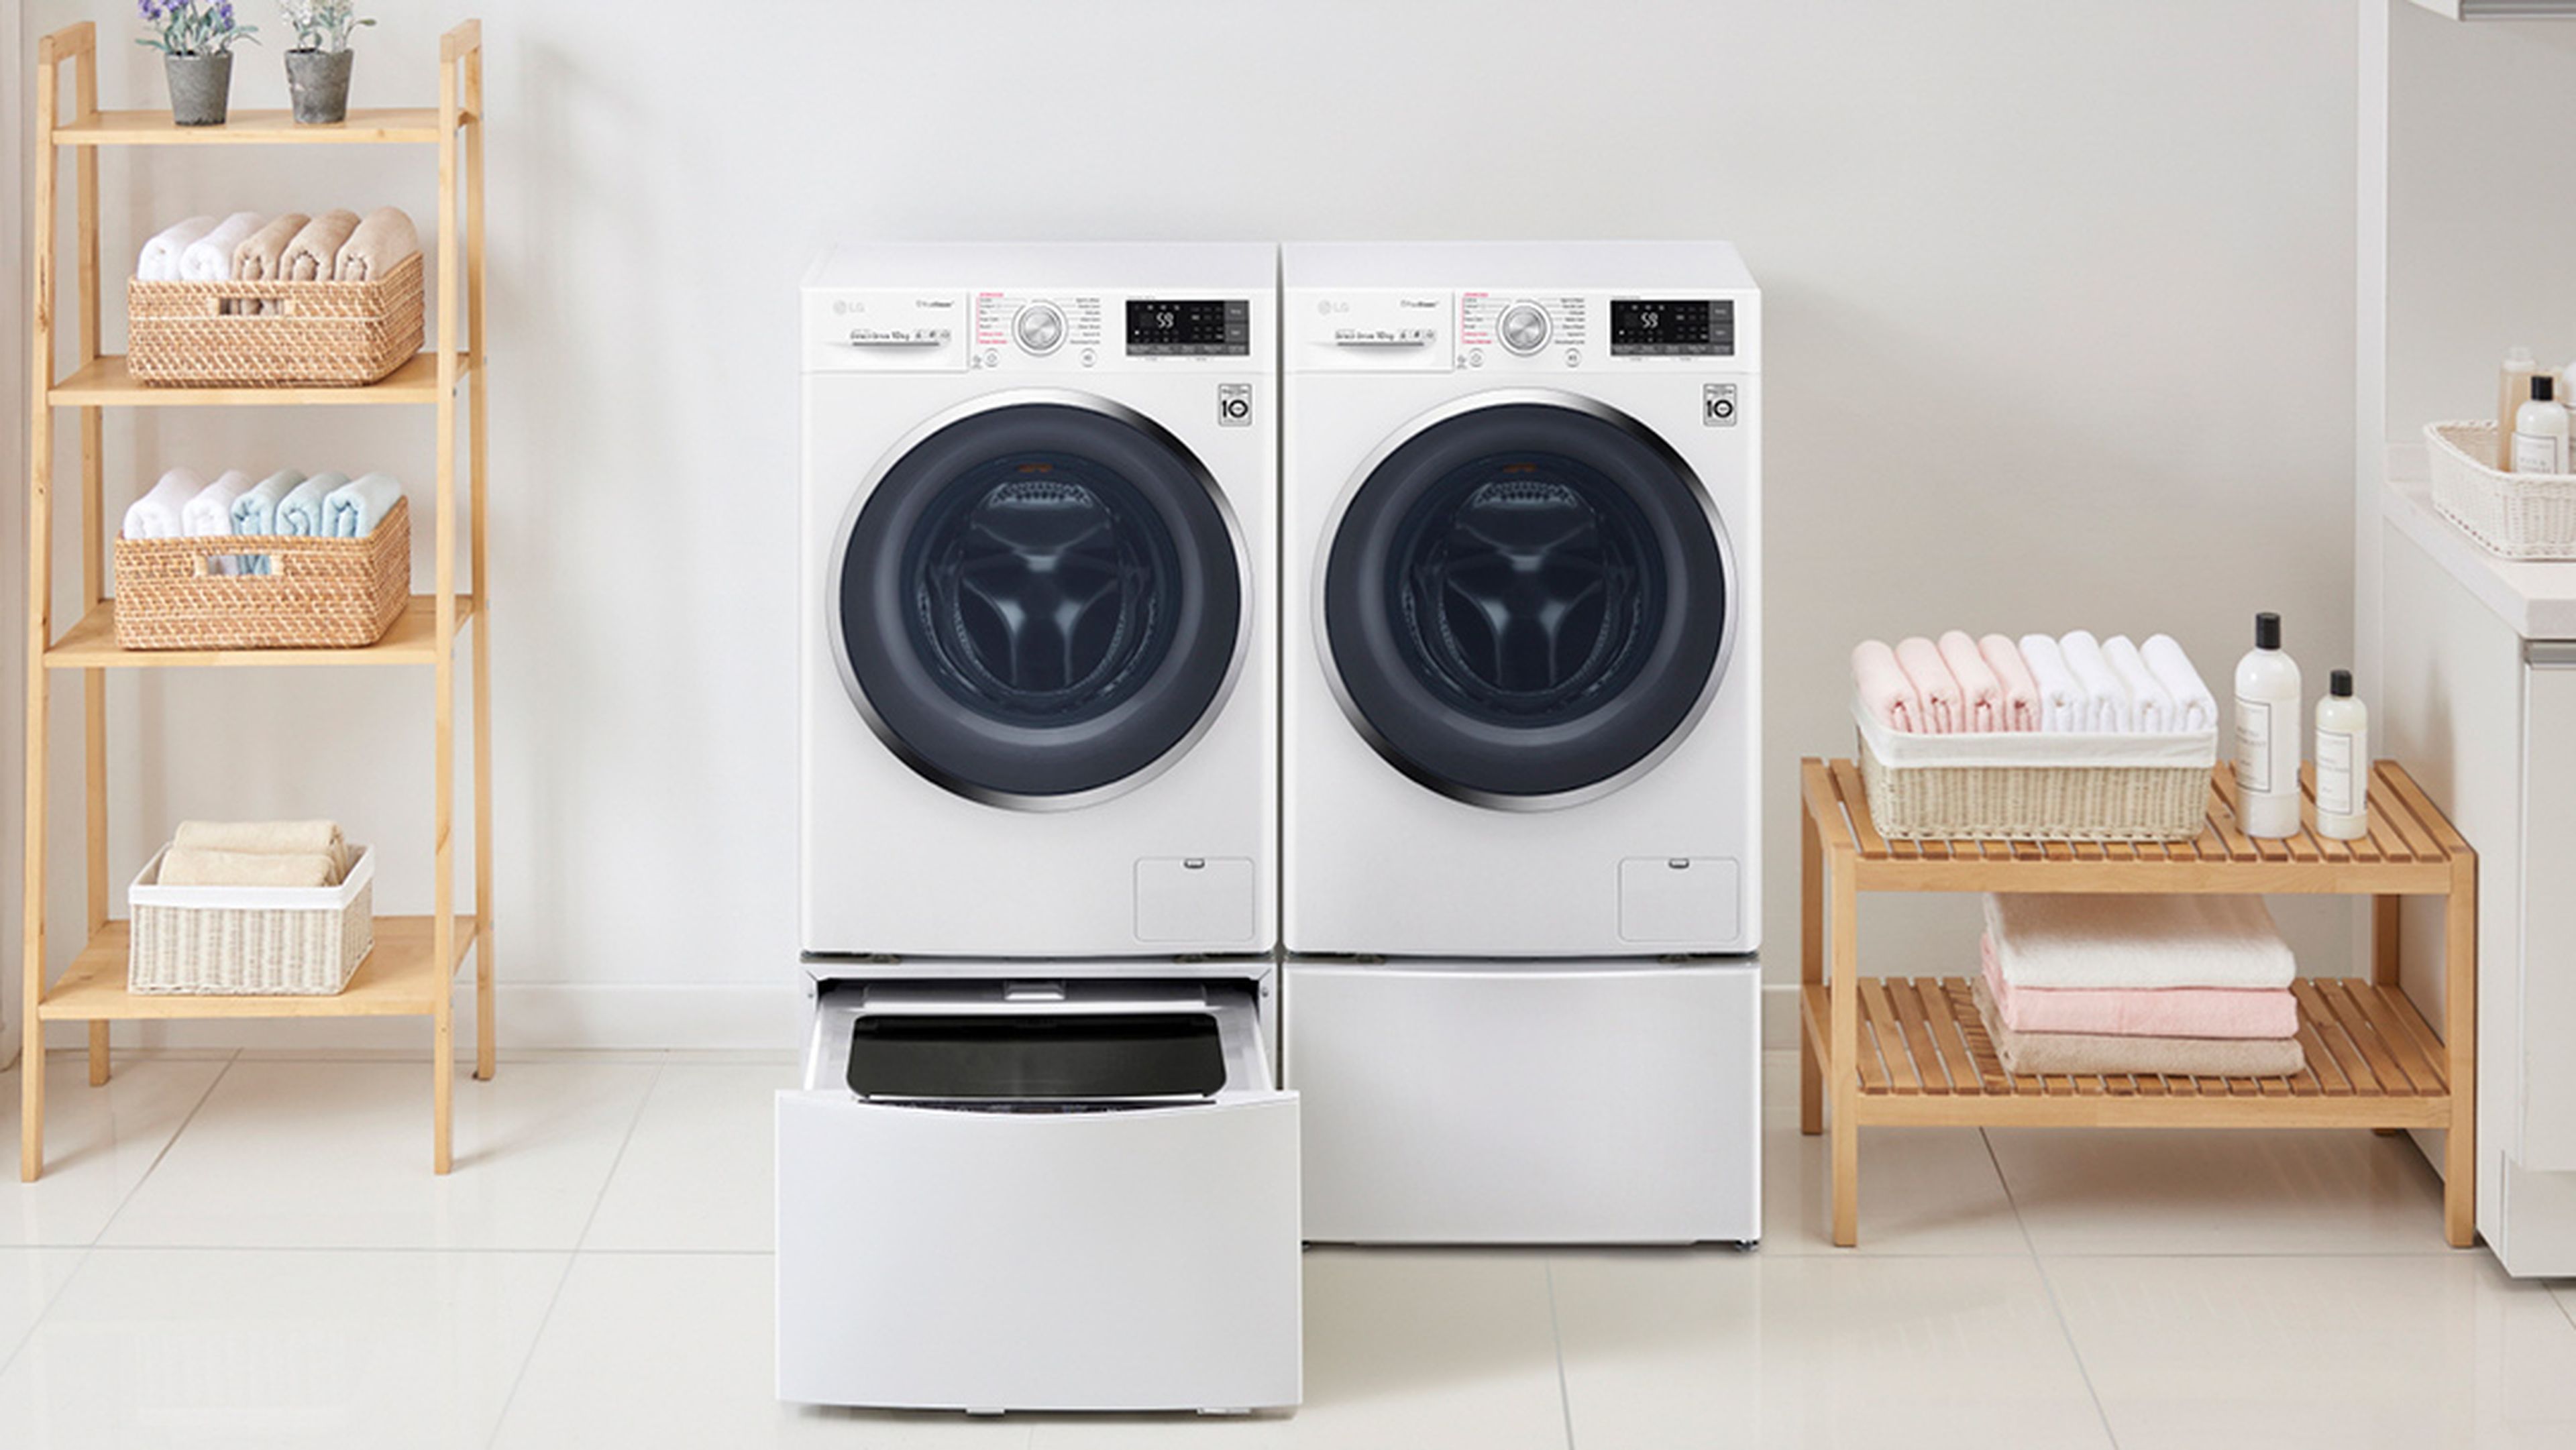 lavadoras ecoeficientes de ahorran y cuidan el medioambiente | Computer